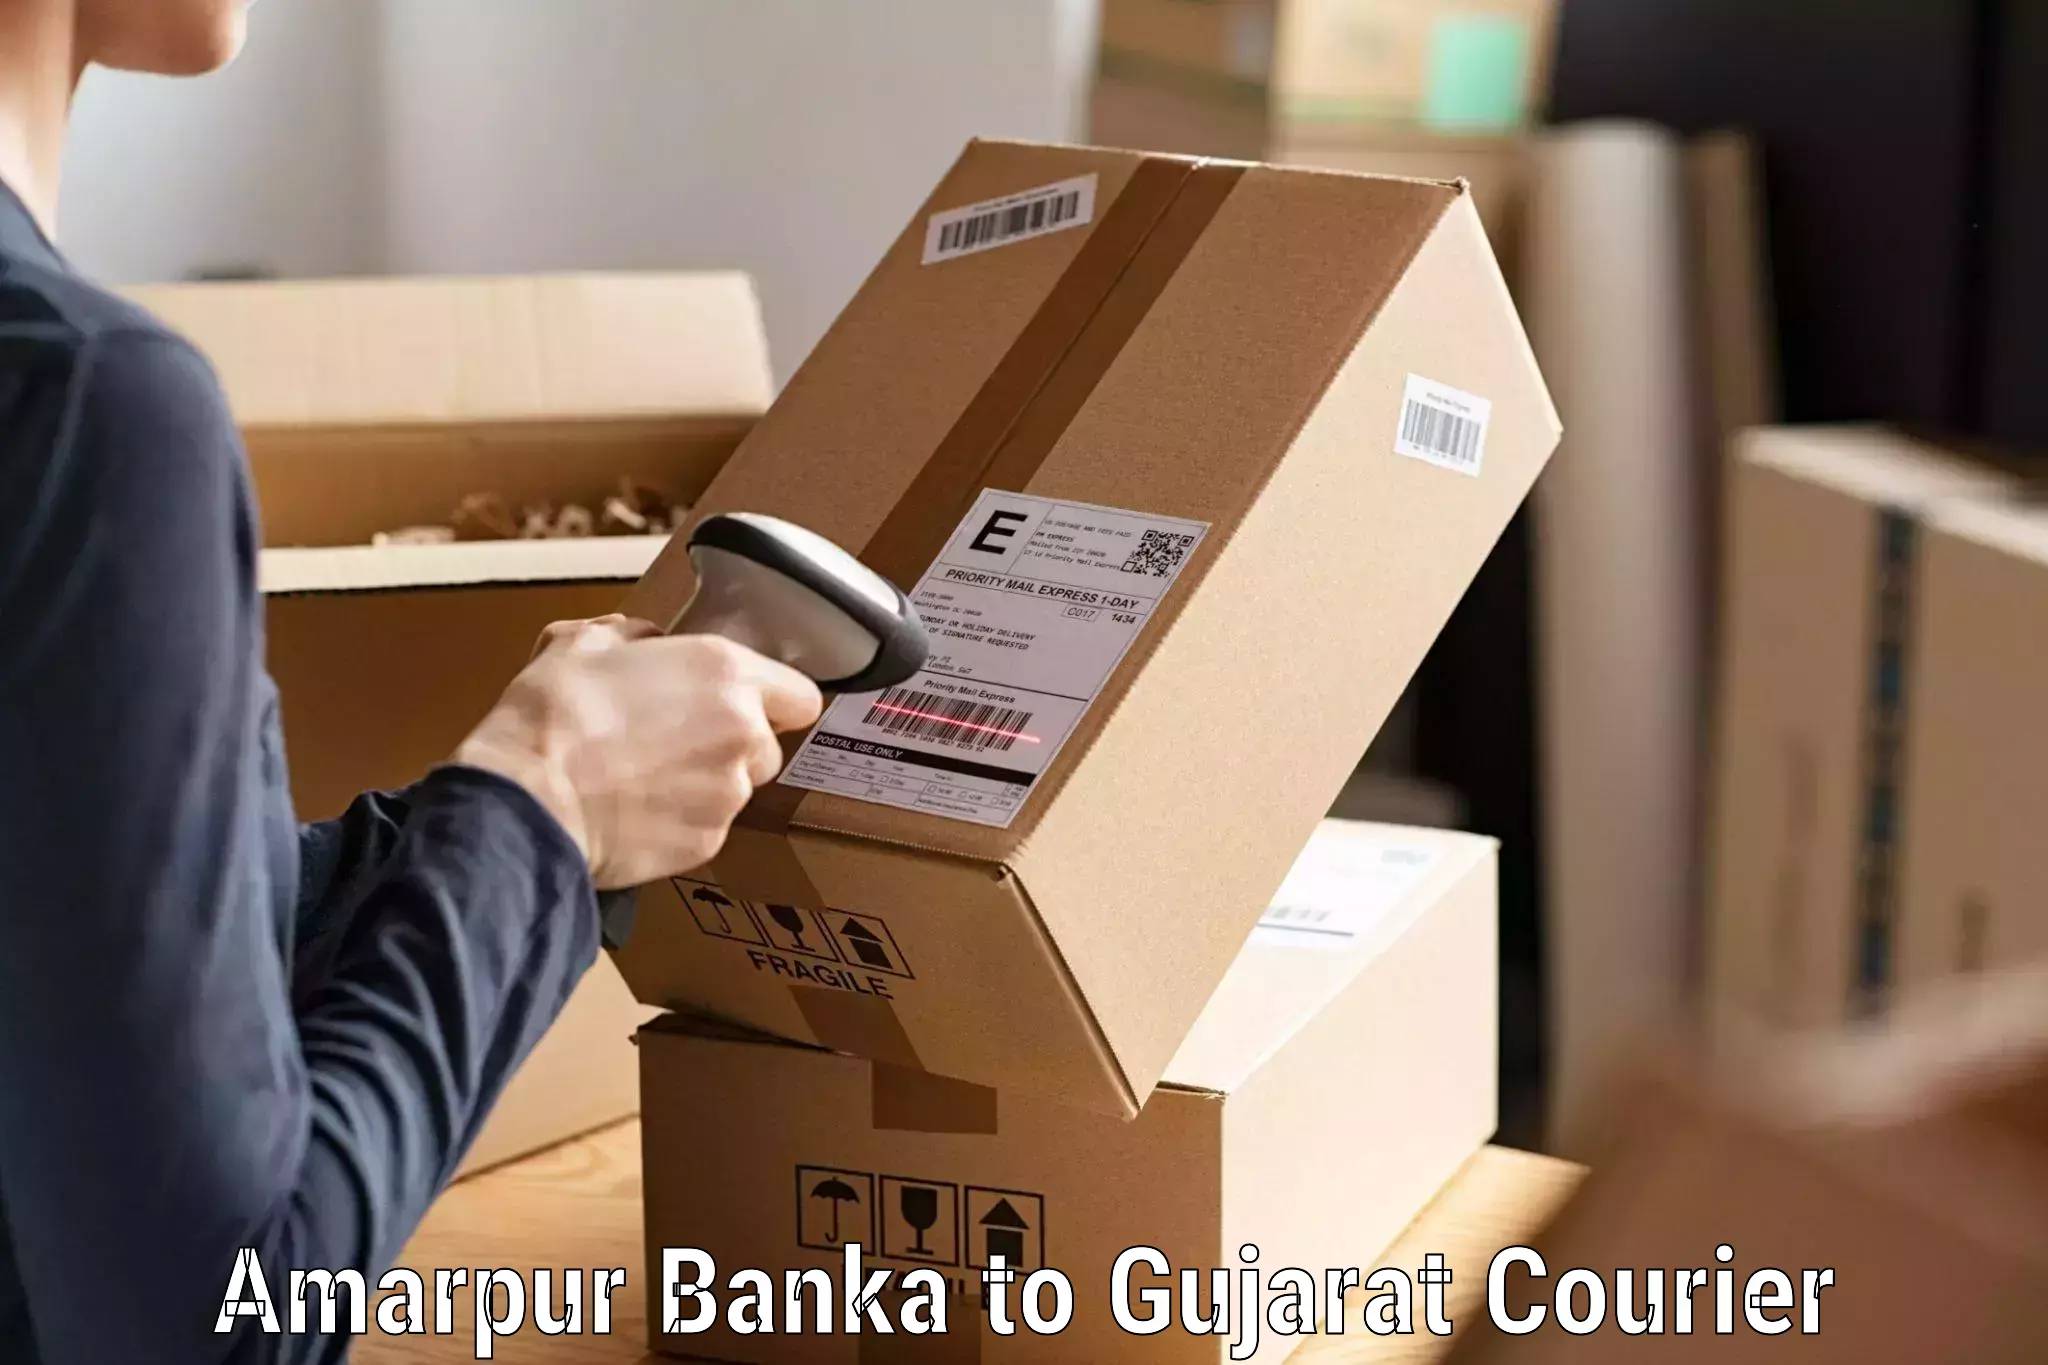 Global shipping networks Amarpur Banka to Panchmahal